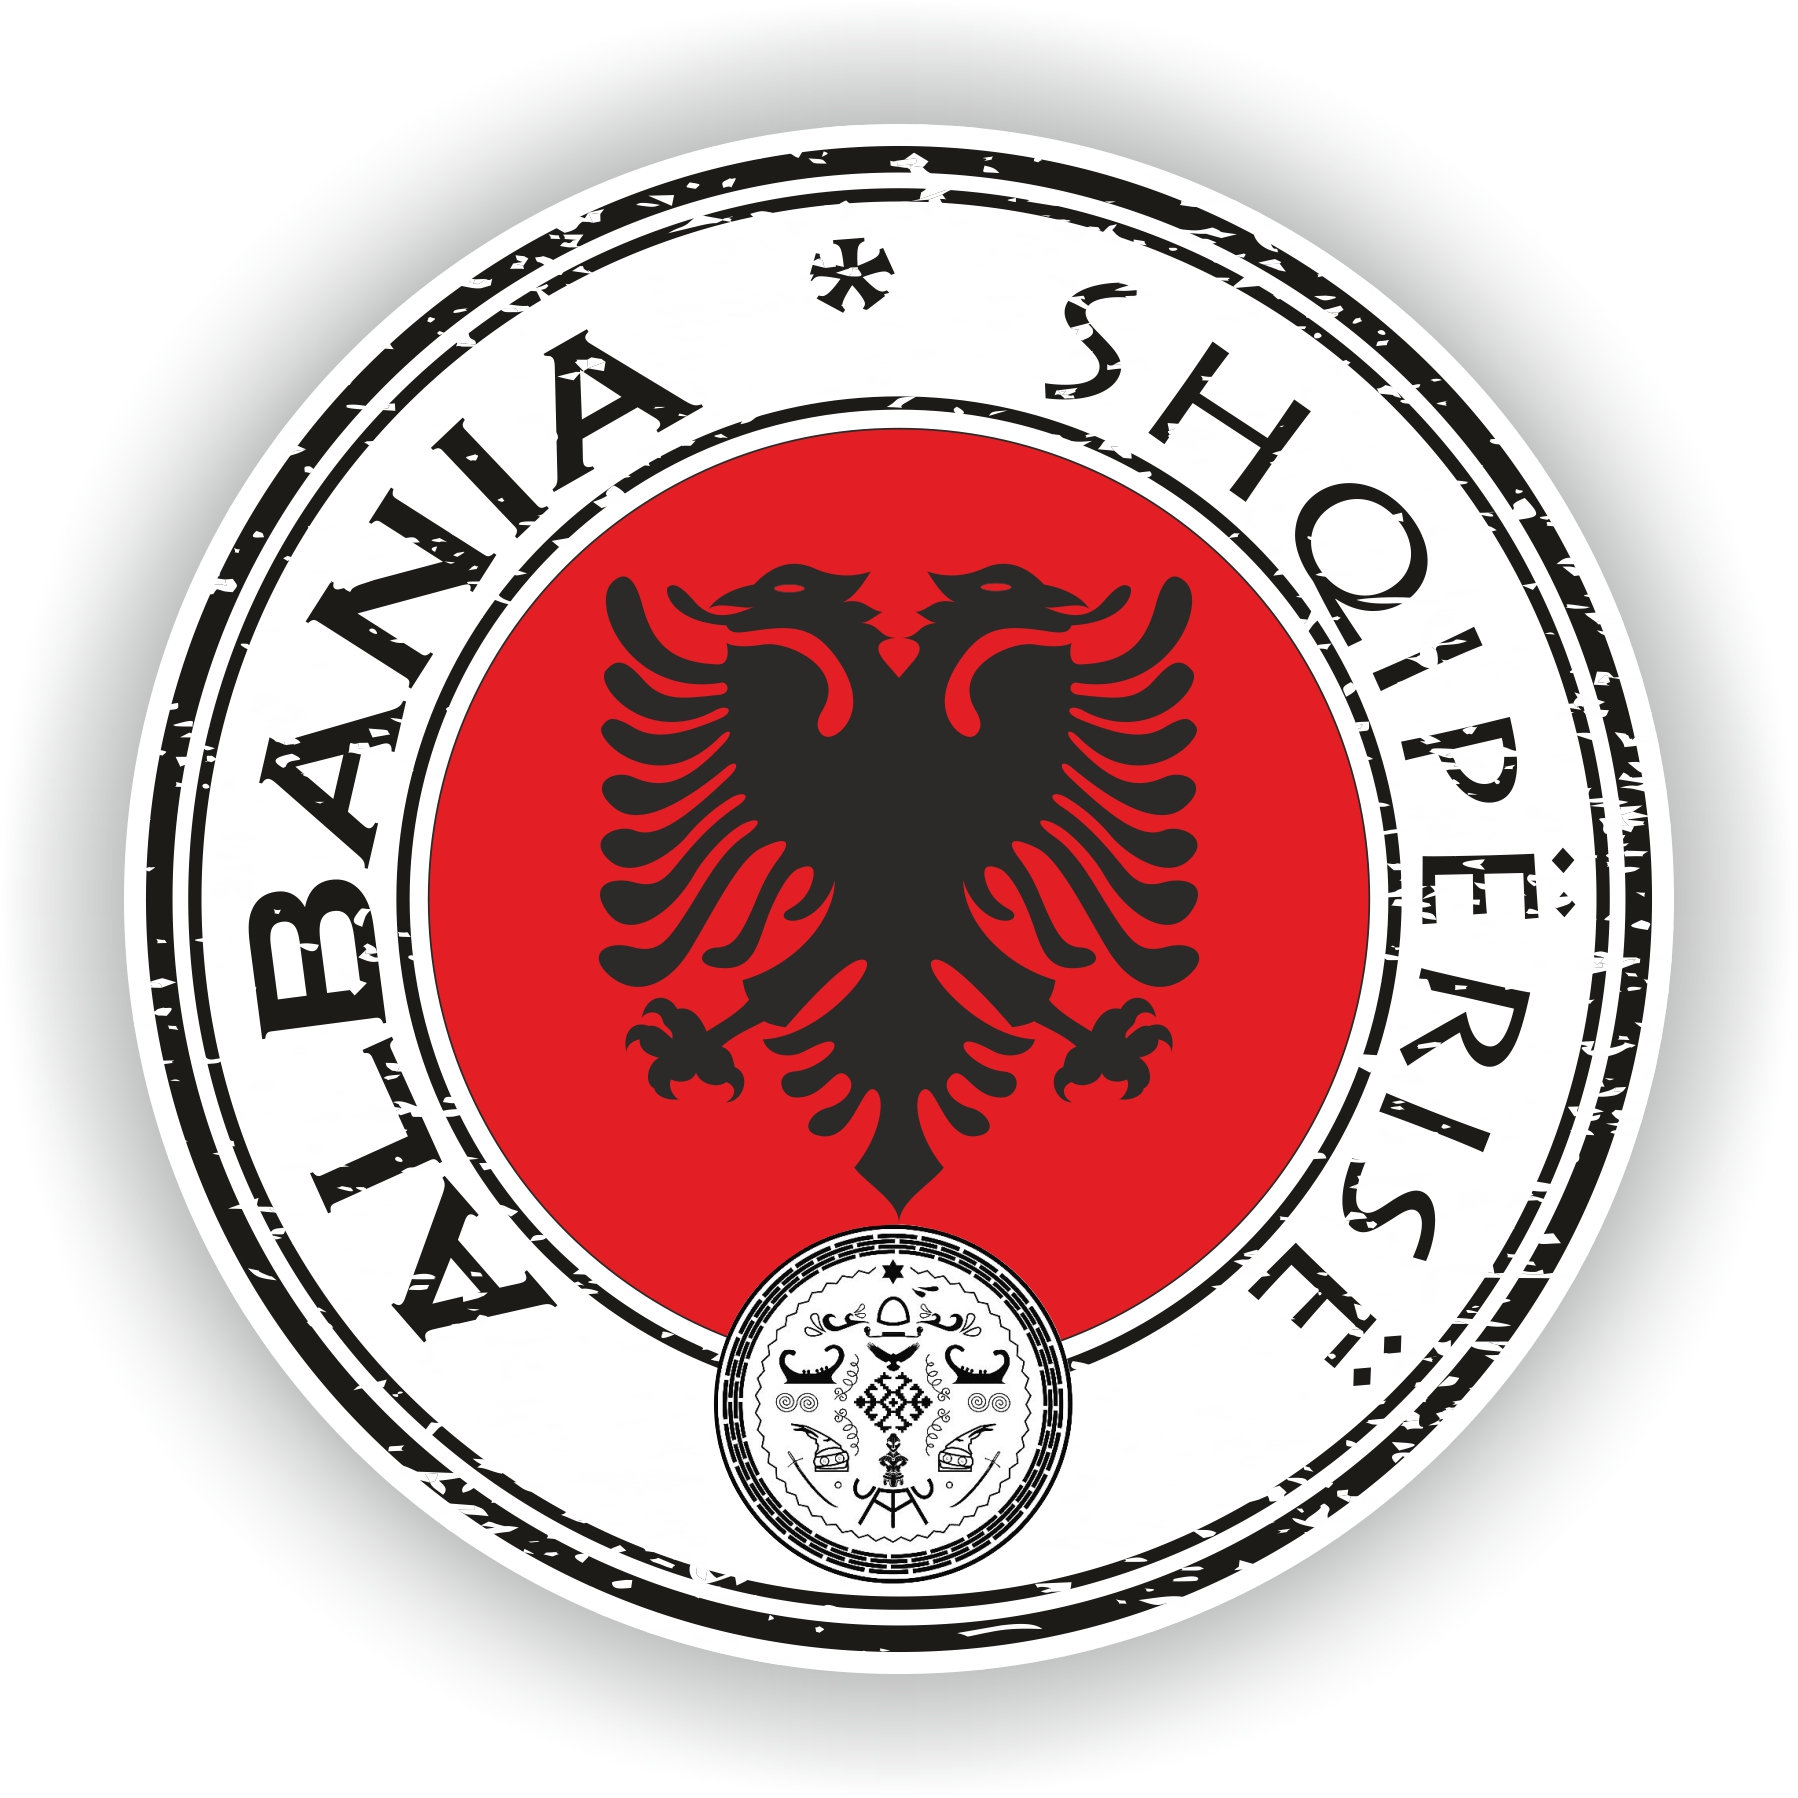 Albanien Adler Aufkleber Autoaufkleber Sticker 15cm x 10cm, Albanien, Länder & Städte, Designs